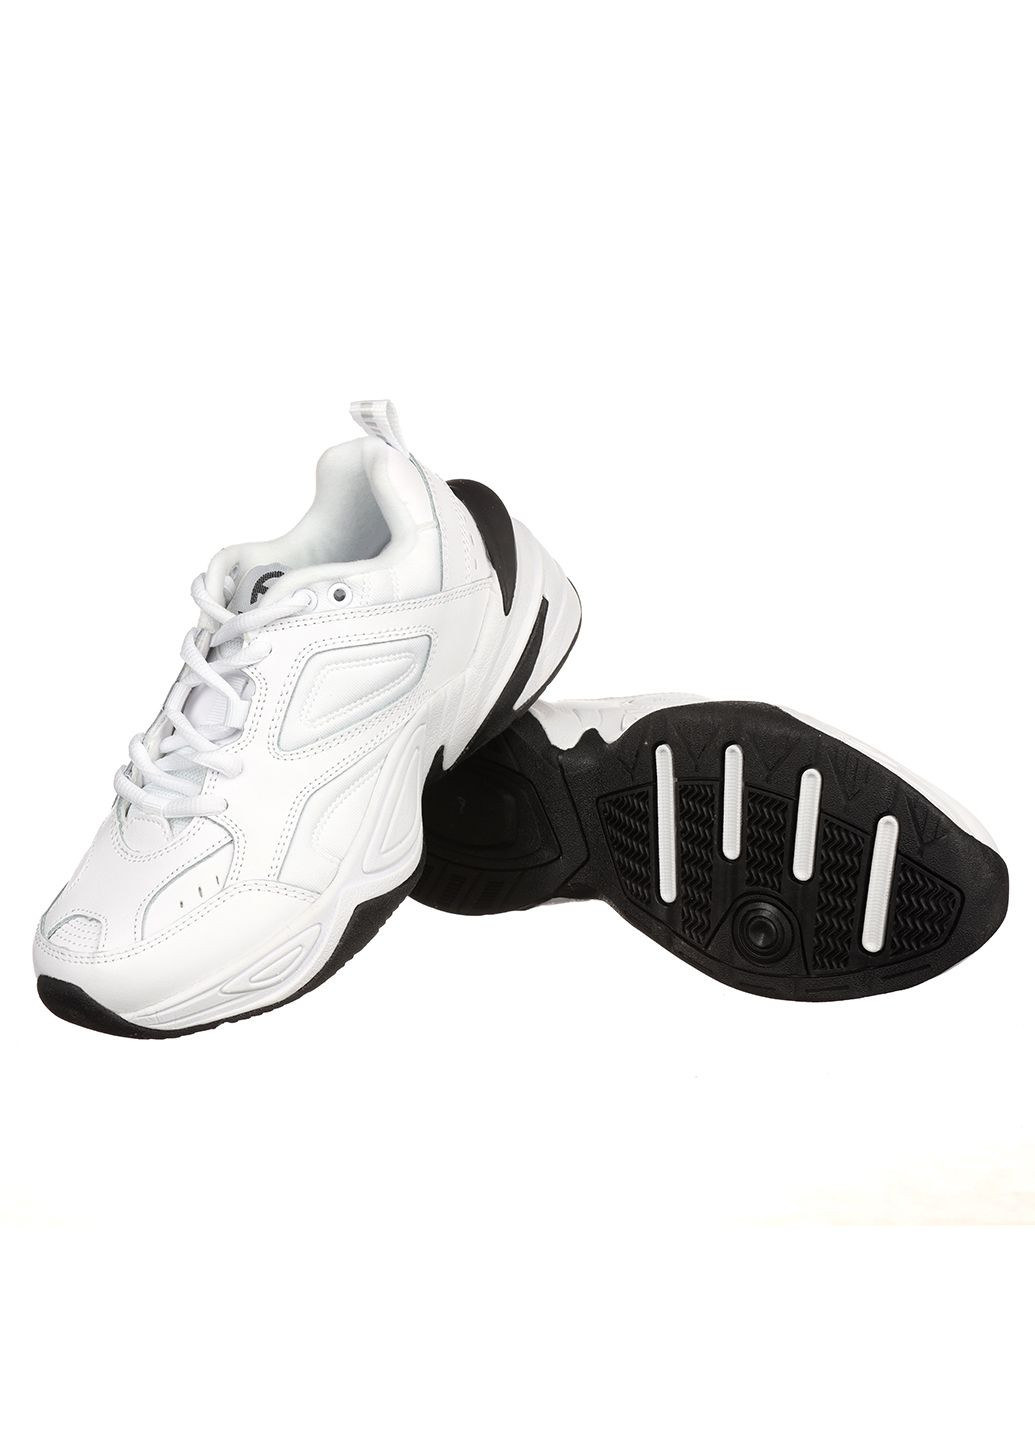 Білі осінні жіночі кросівки g3452-2 Classica